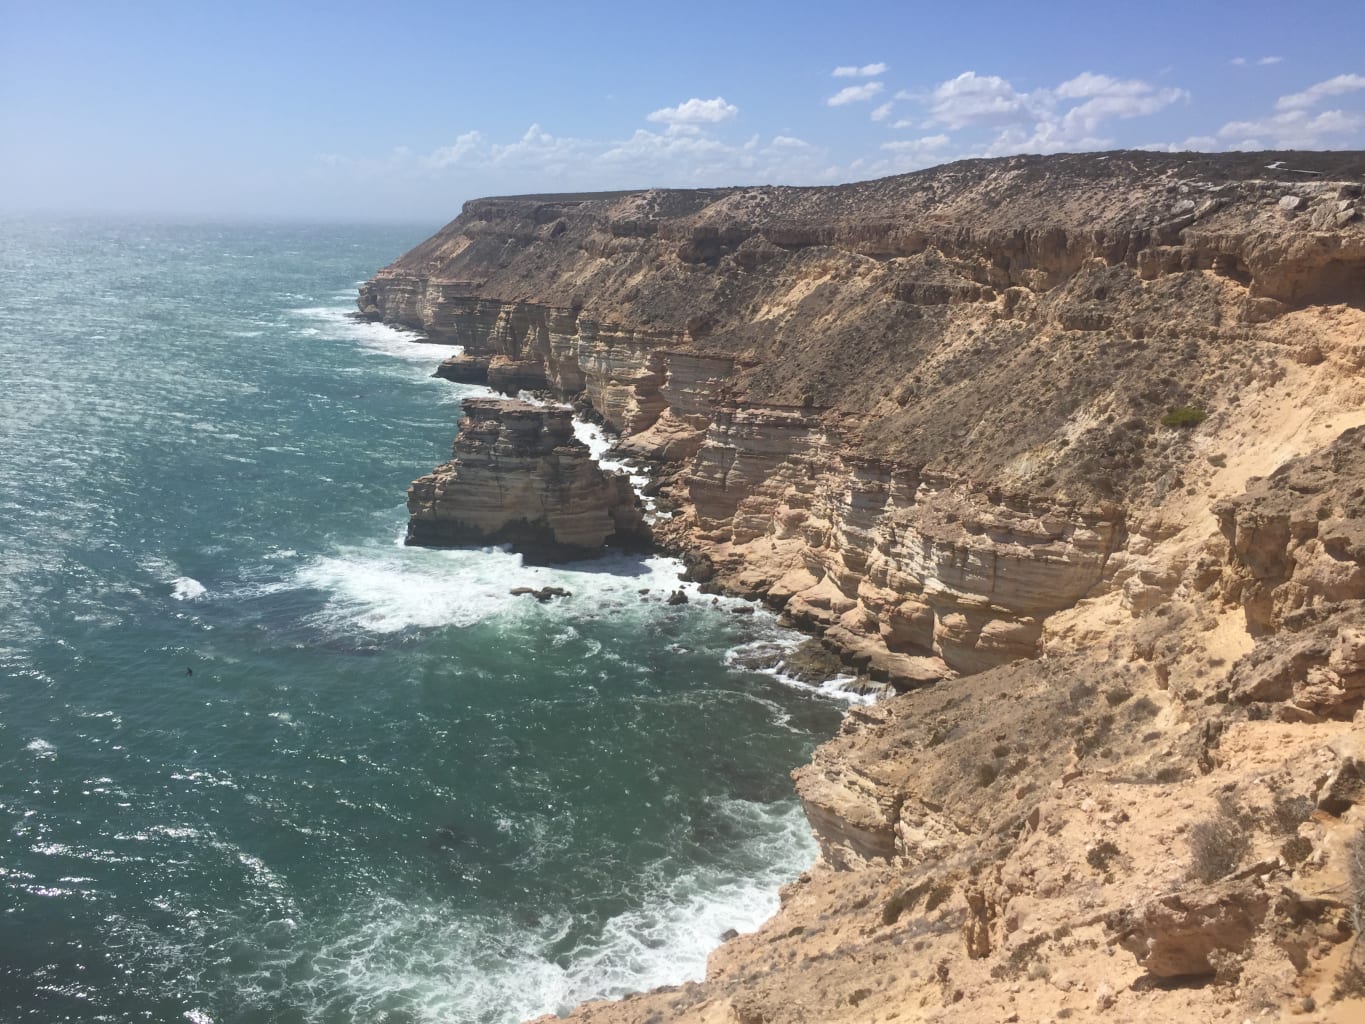 Cliffs alongside the ocean in Australia.